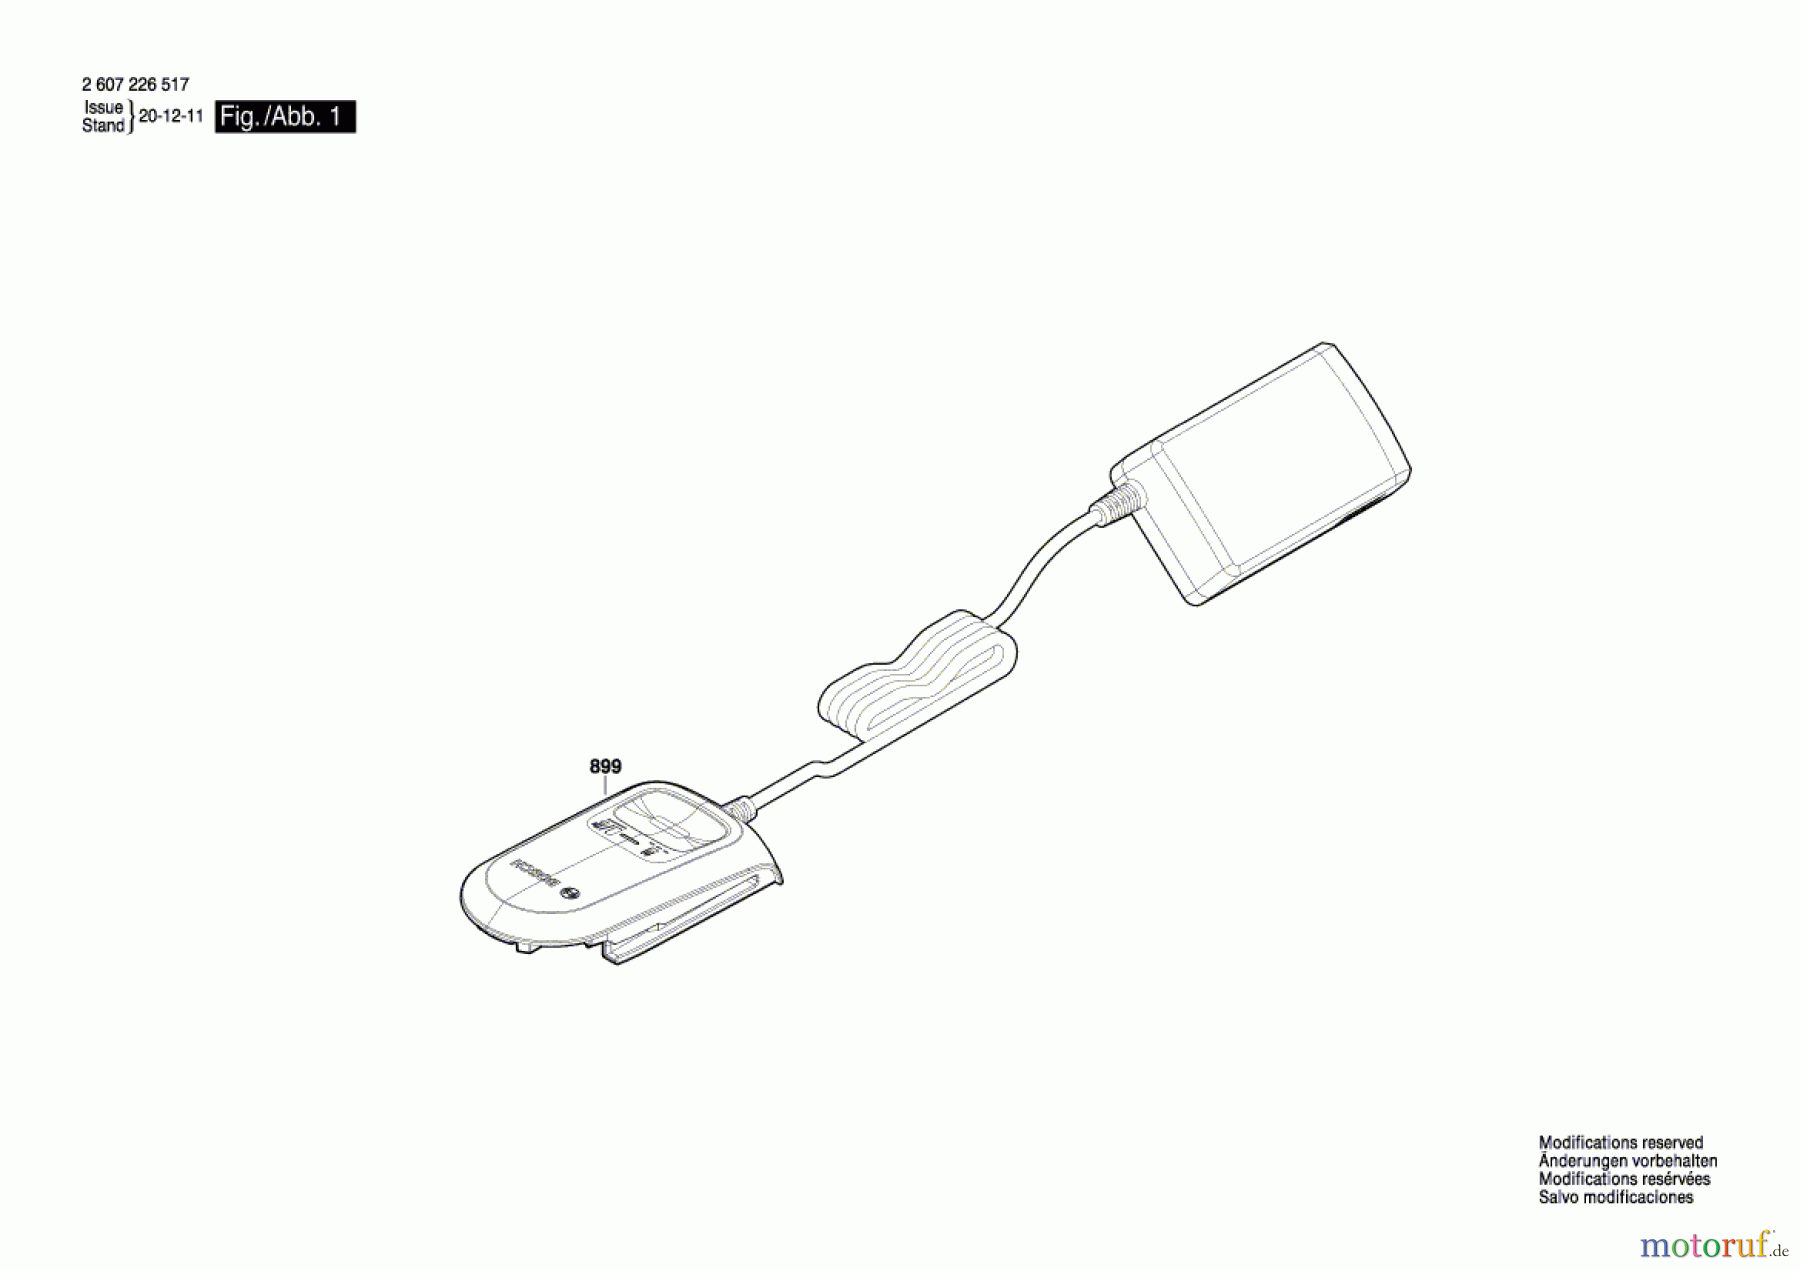  Bosch Werkzeug Schnell-Lader Ladegerät AL 18V-20 Seite 1